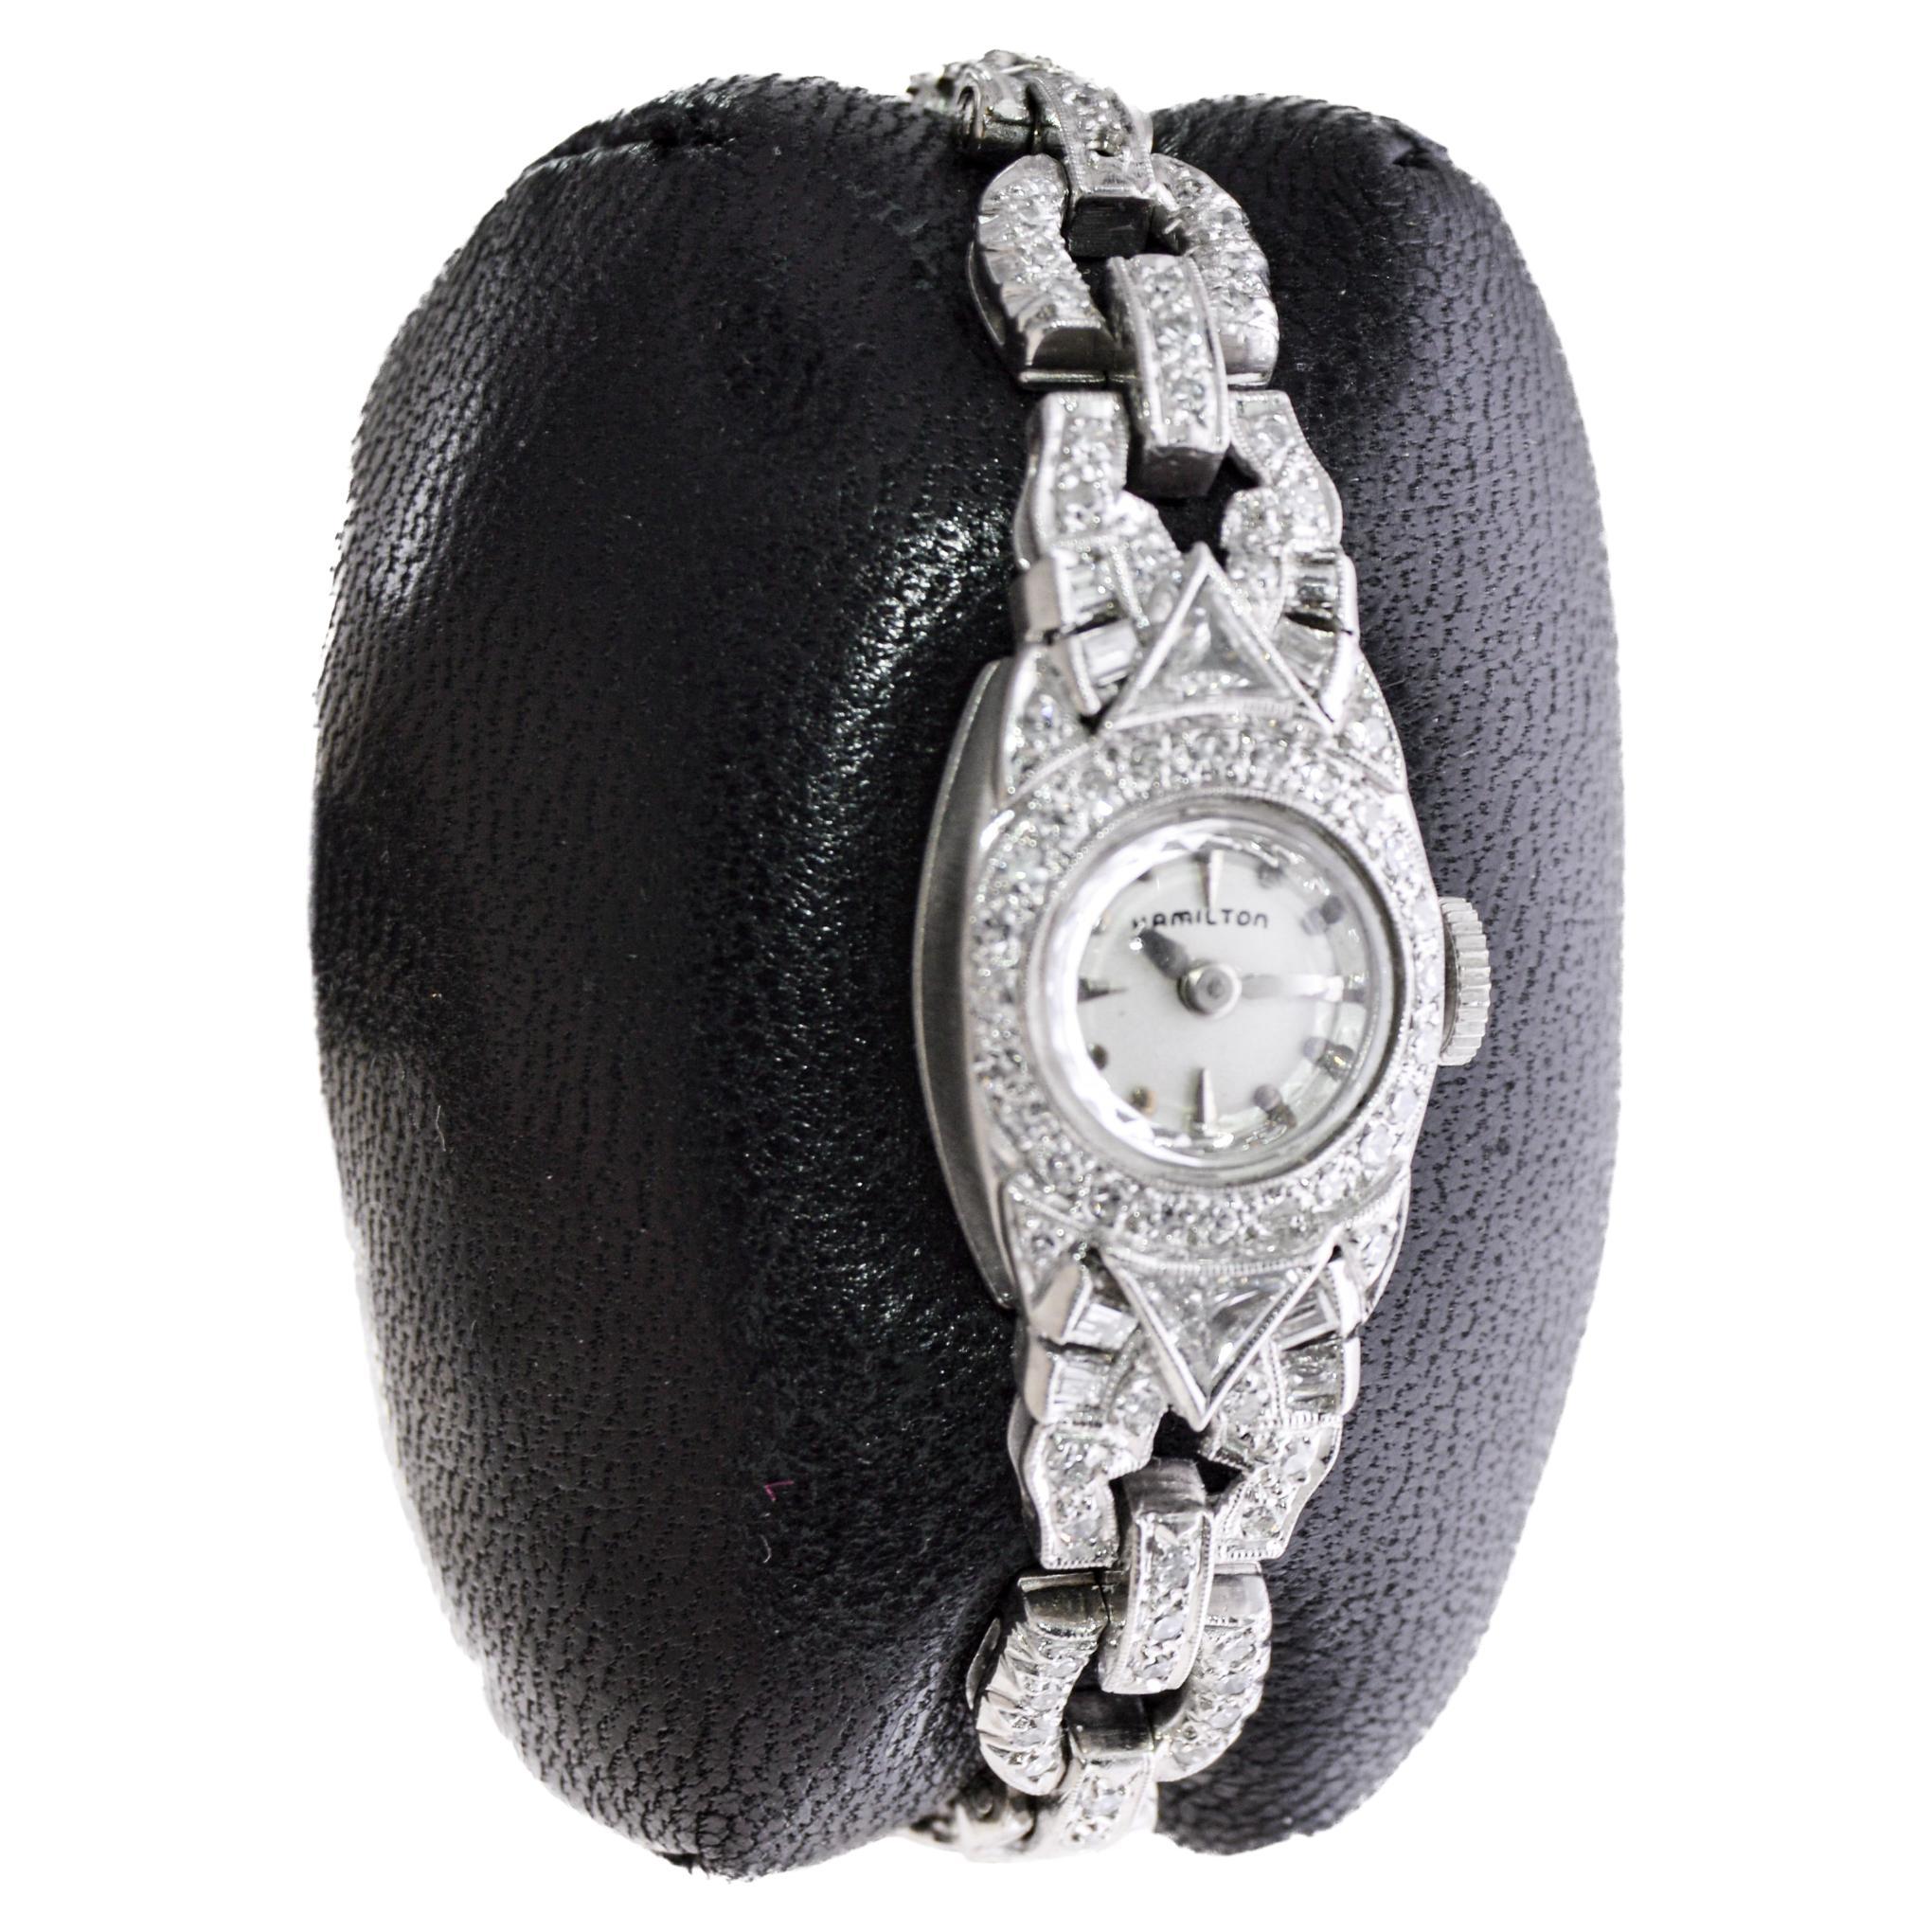 FABRIK / HAUS: Hamilton Watch Company
STIL / REFERENZ: Art Deco / Abendkleid Uhr
METALL / MATERIAL: Platin & 14Kt. Gold-Armband 
CIRCA / JAHR: 1940er Jahre
ABMESSUNGEN / GRÖSSE: Länge 50mm X Durchmesser 14mm
UHRWERK / KALIBER: Handaufzug / 22 Jewels